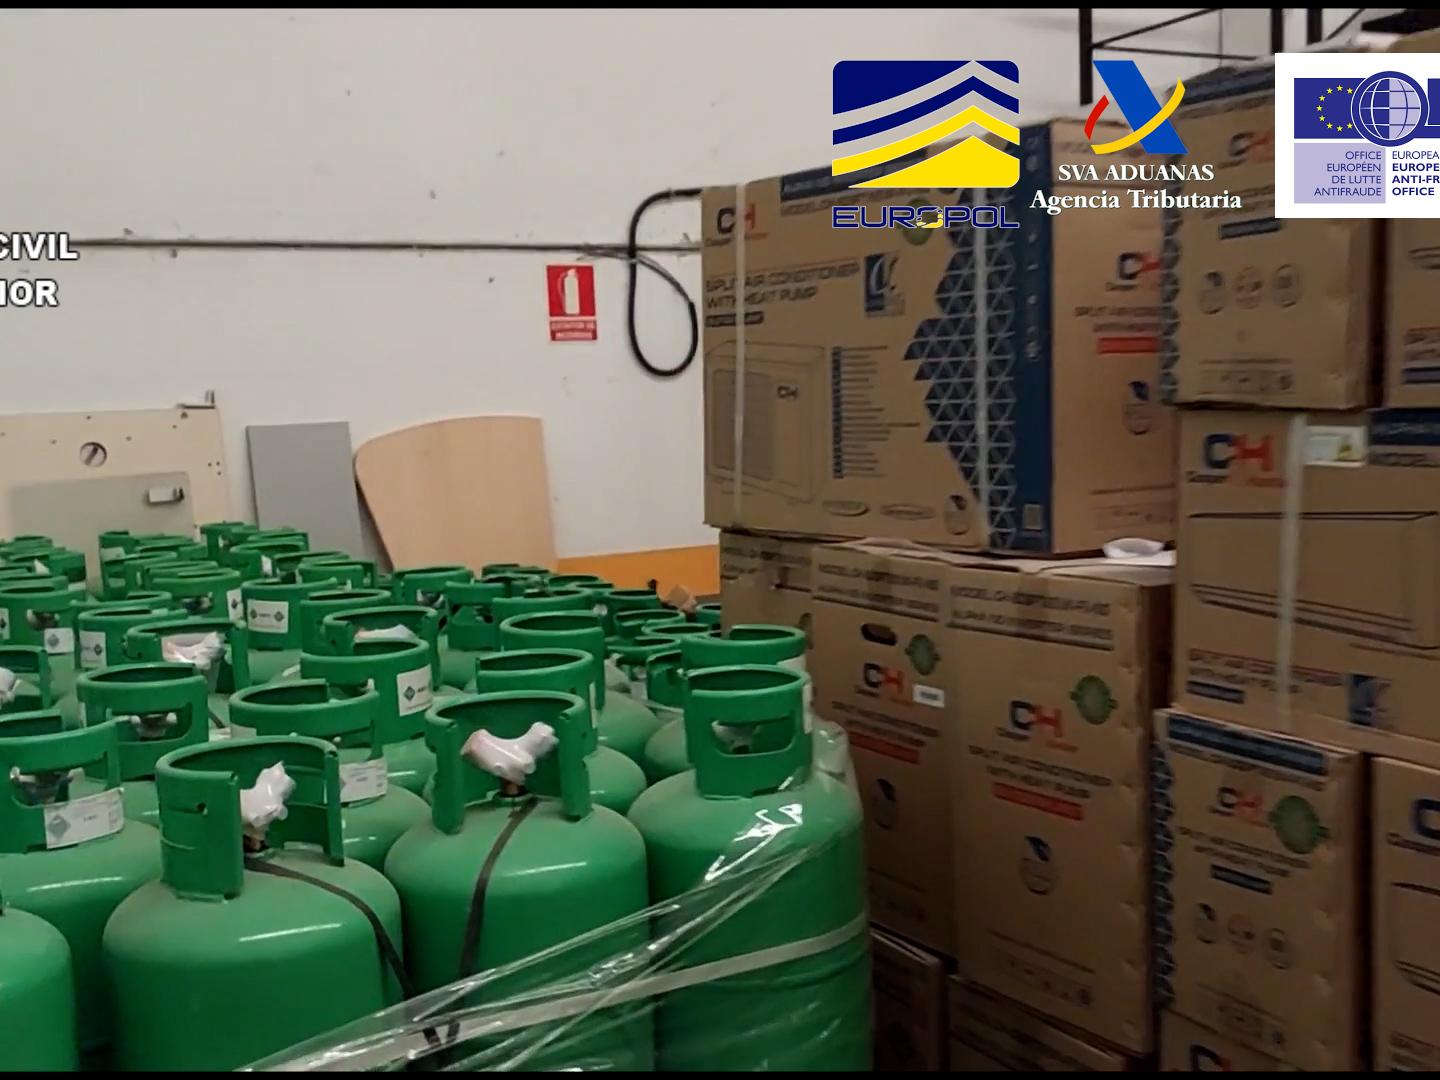 Bombonas incautadas en la operación del Seprona contra tráfico ilícito de gases de efecto invernadero